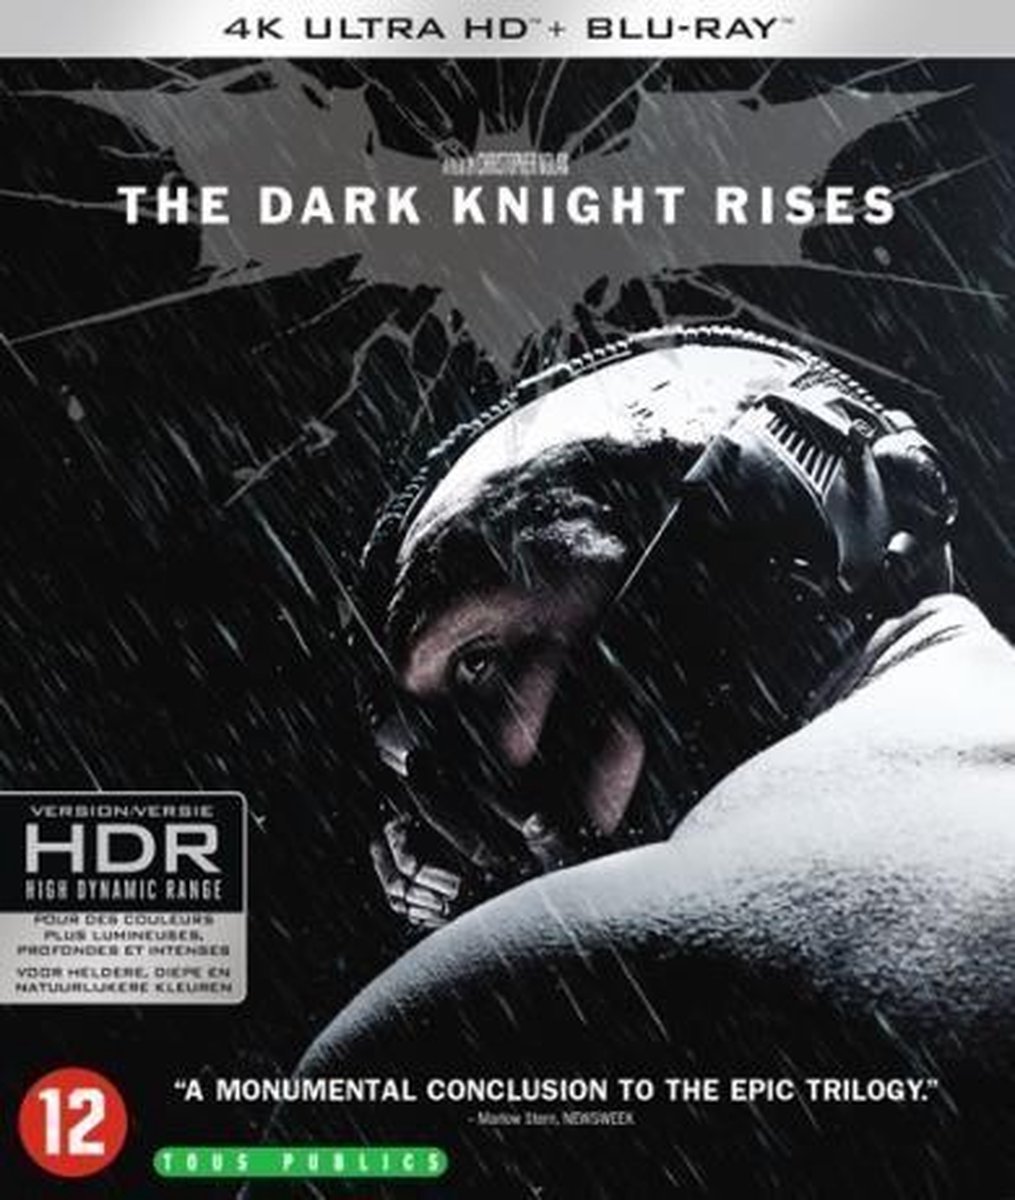 The Dark Knight Rises (4K Ultra HD Blu-ray) - Warner Home Video